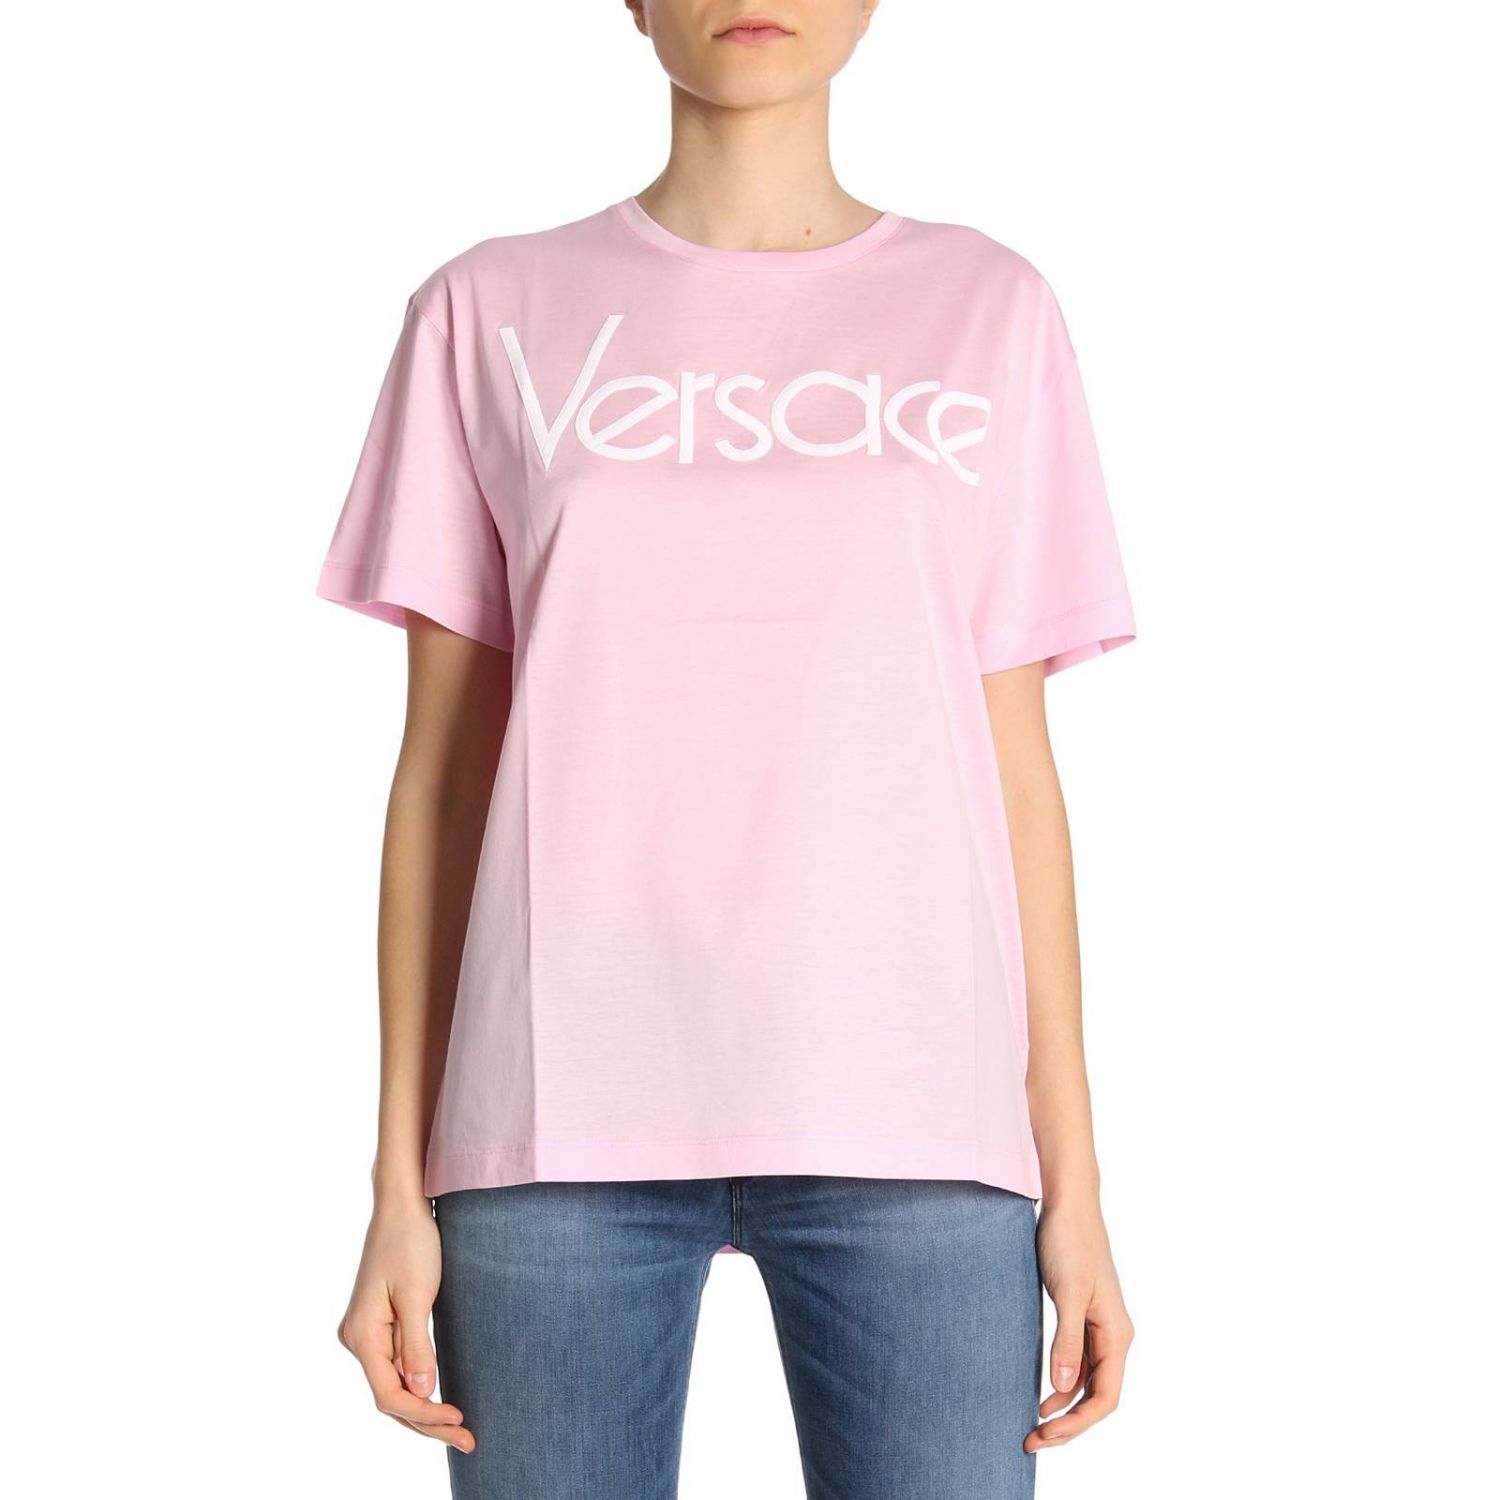 versace tribute t shirt